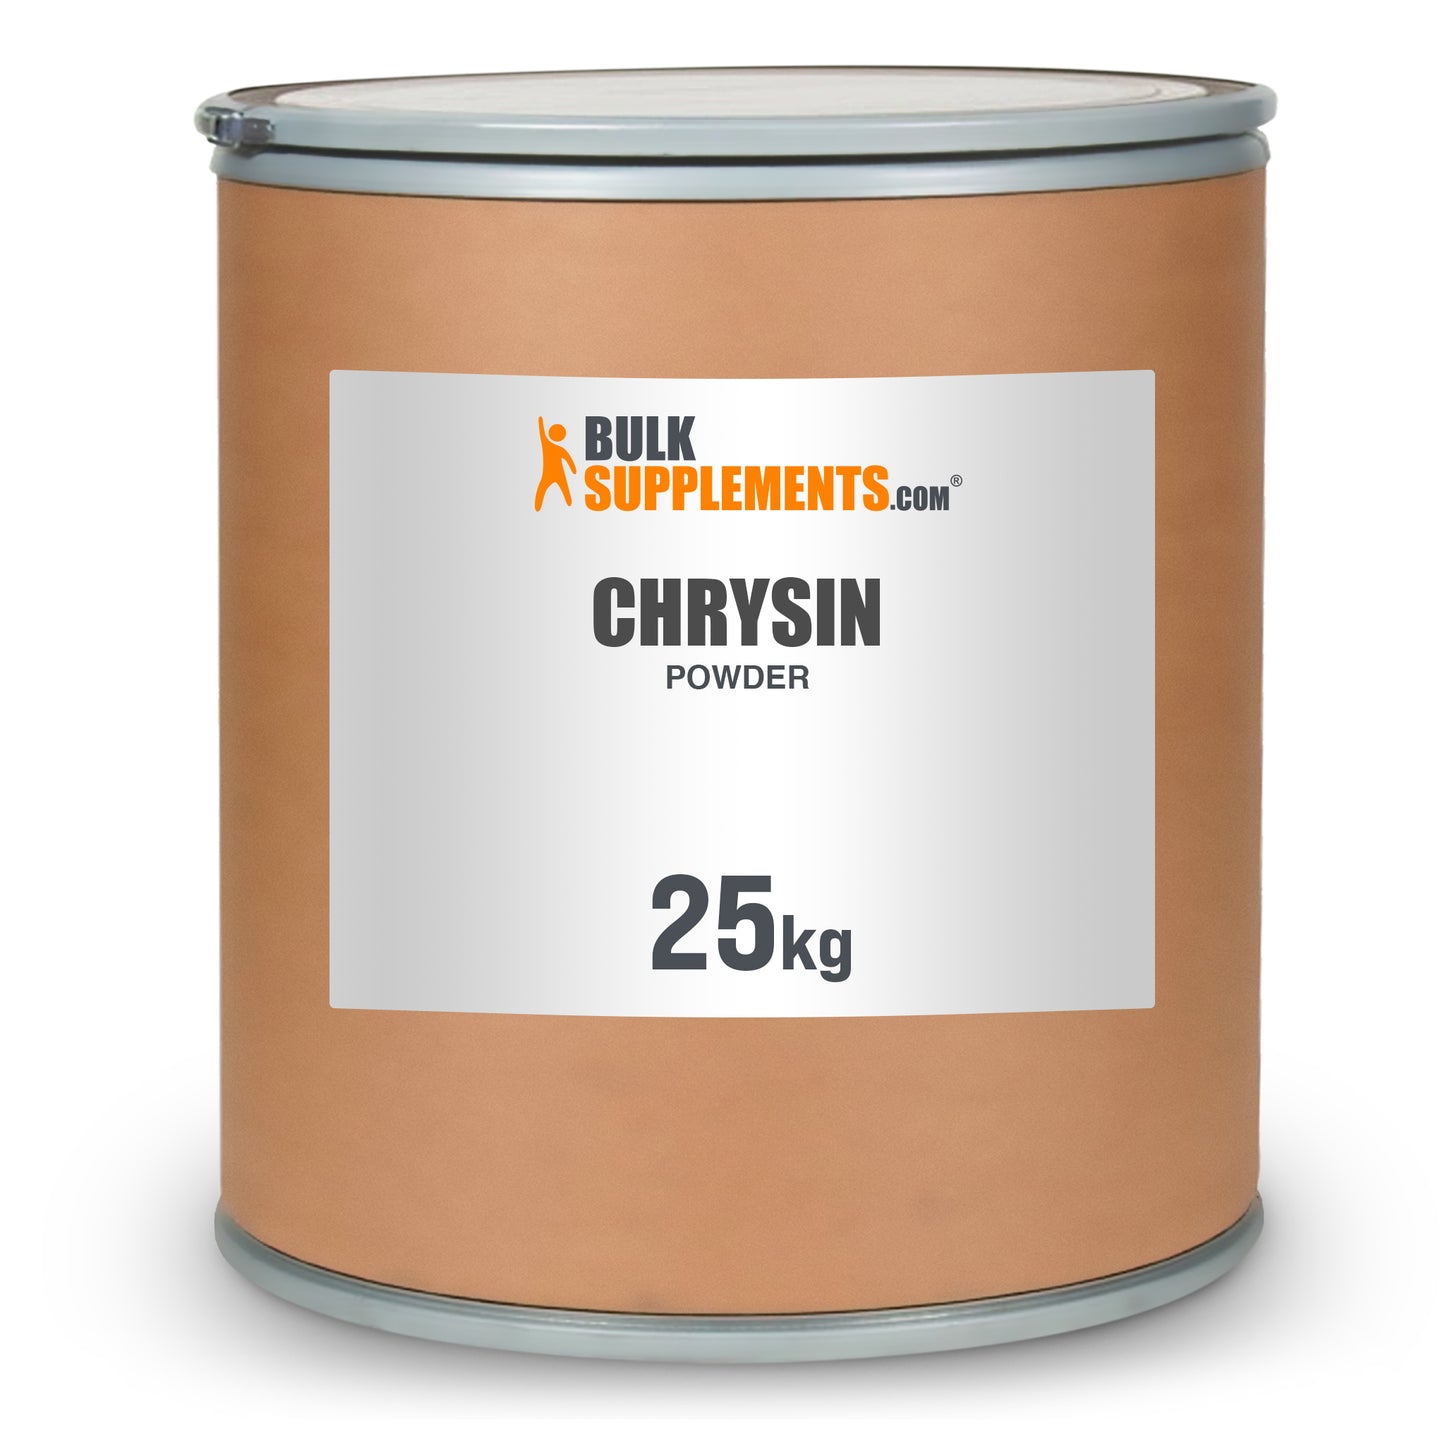 Chrysin Powder 25kg barrel image